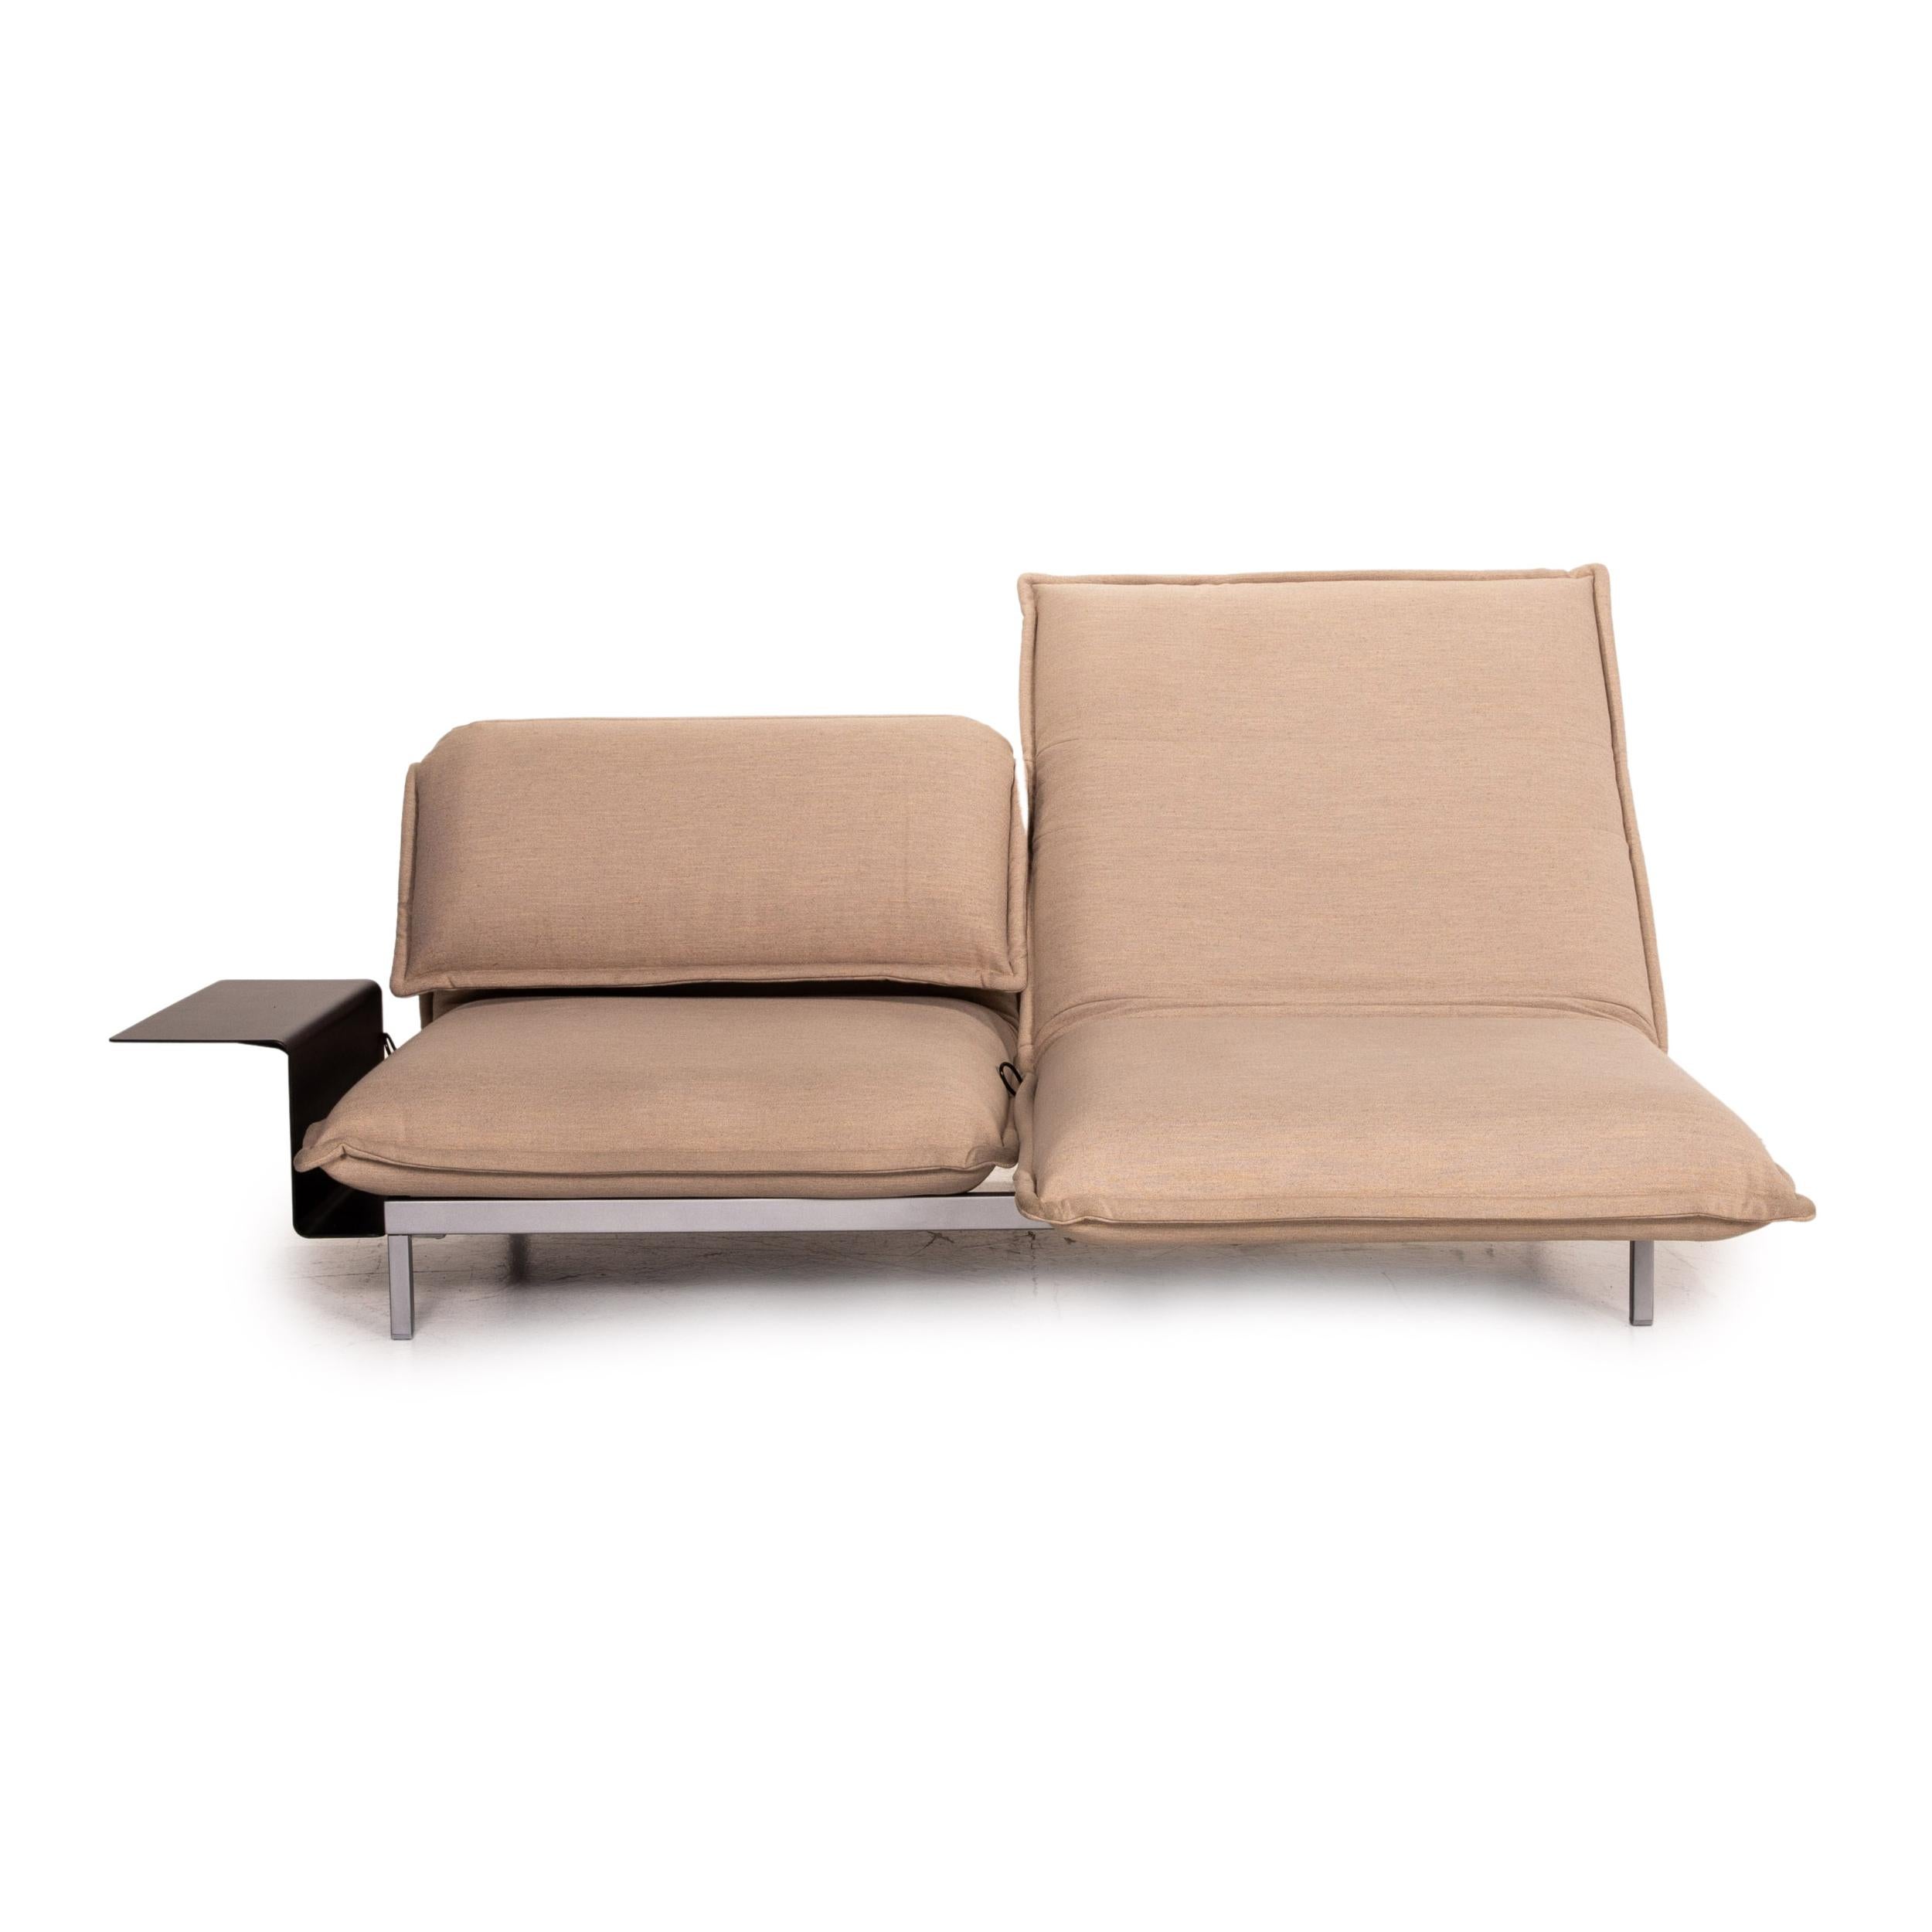 ergonomic sofa dimensions